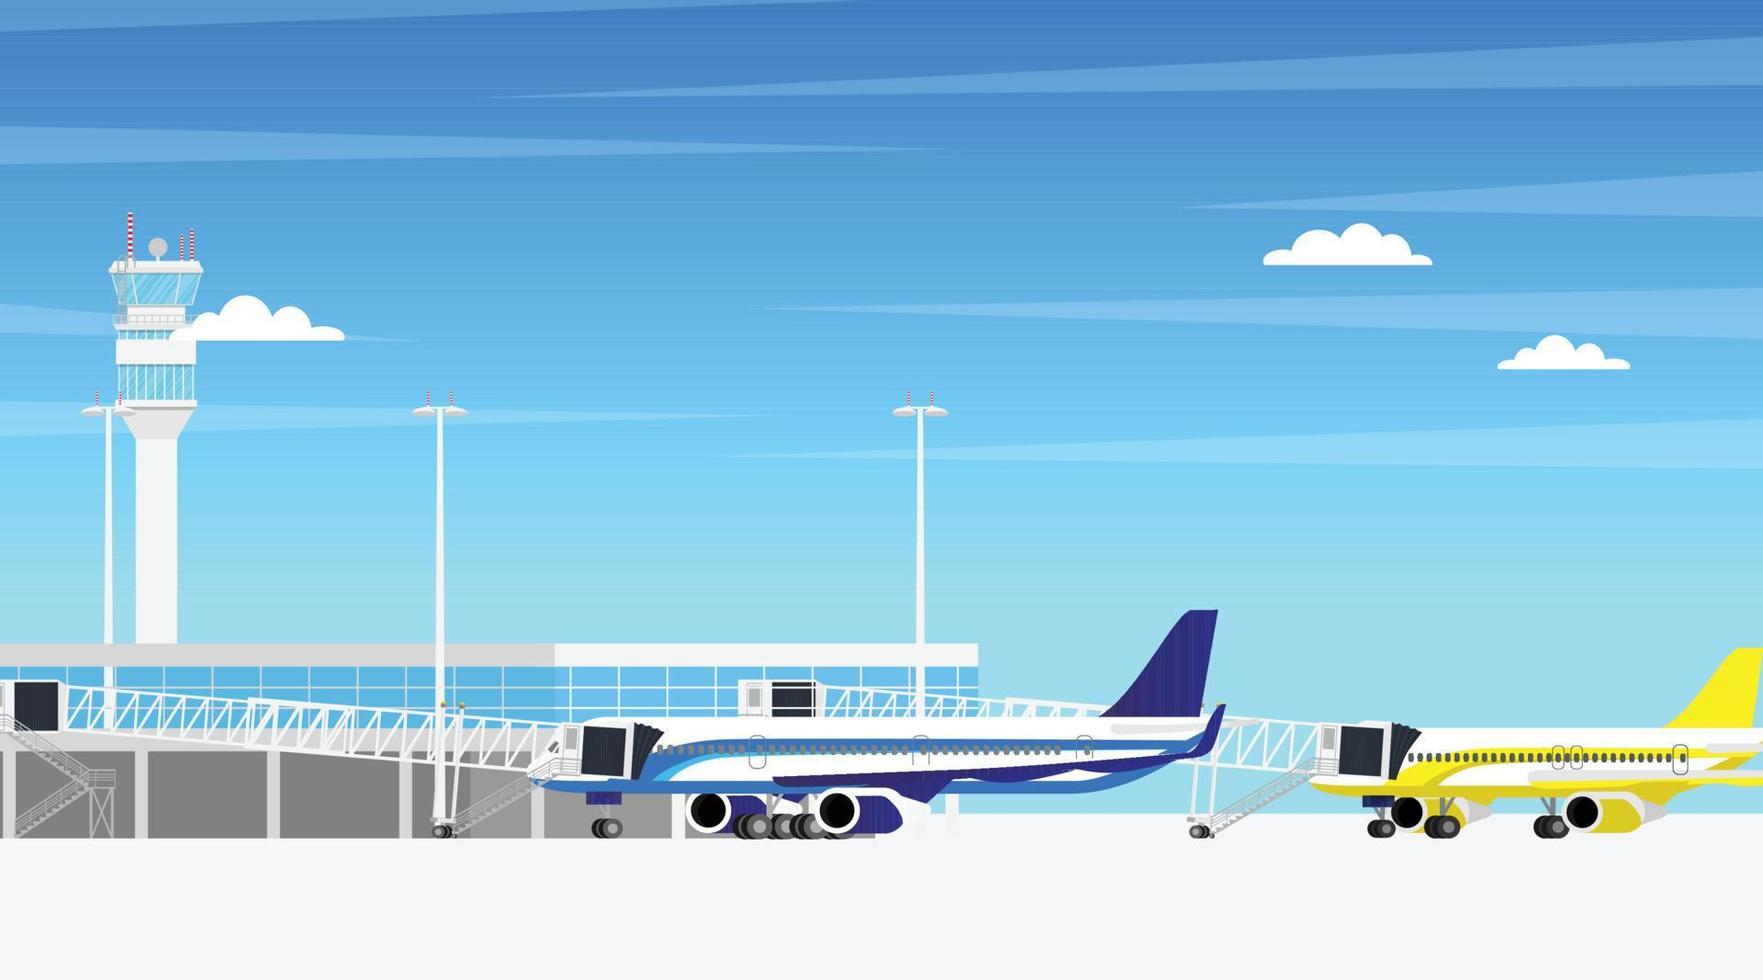 flygplats flygfält terminal byggnad med flygplan flygplan parkering på avresa Port och aero väg sätt bro ansluten till flygplats terminal hall i minimal design vektor